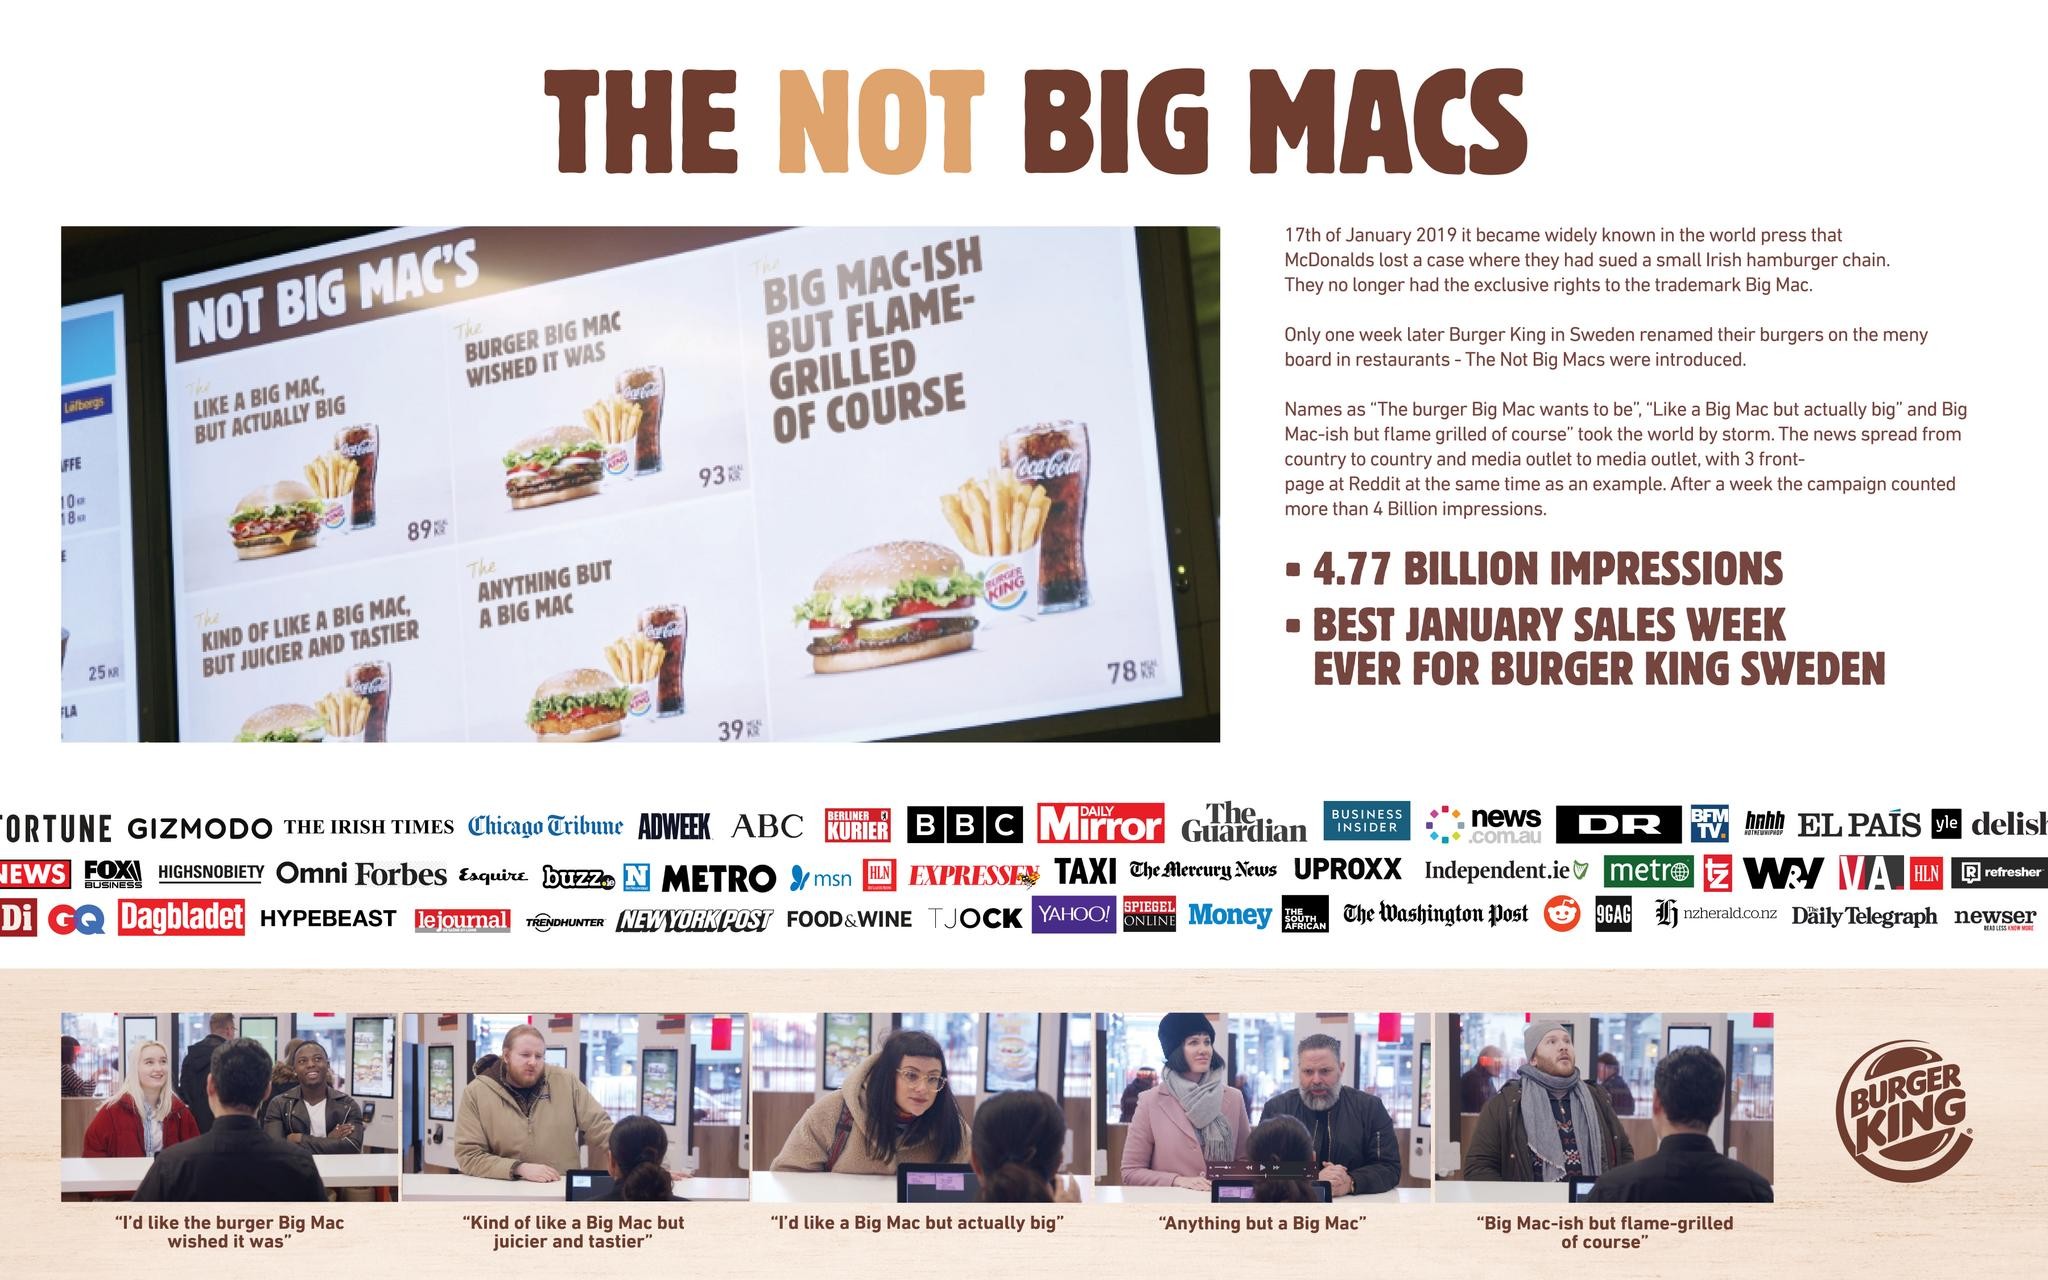 The Not Big Macs